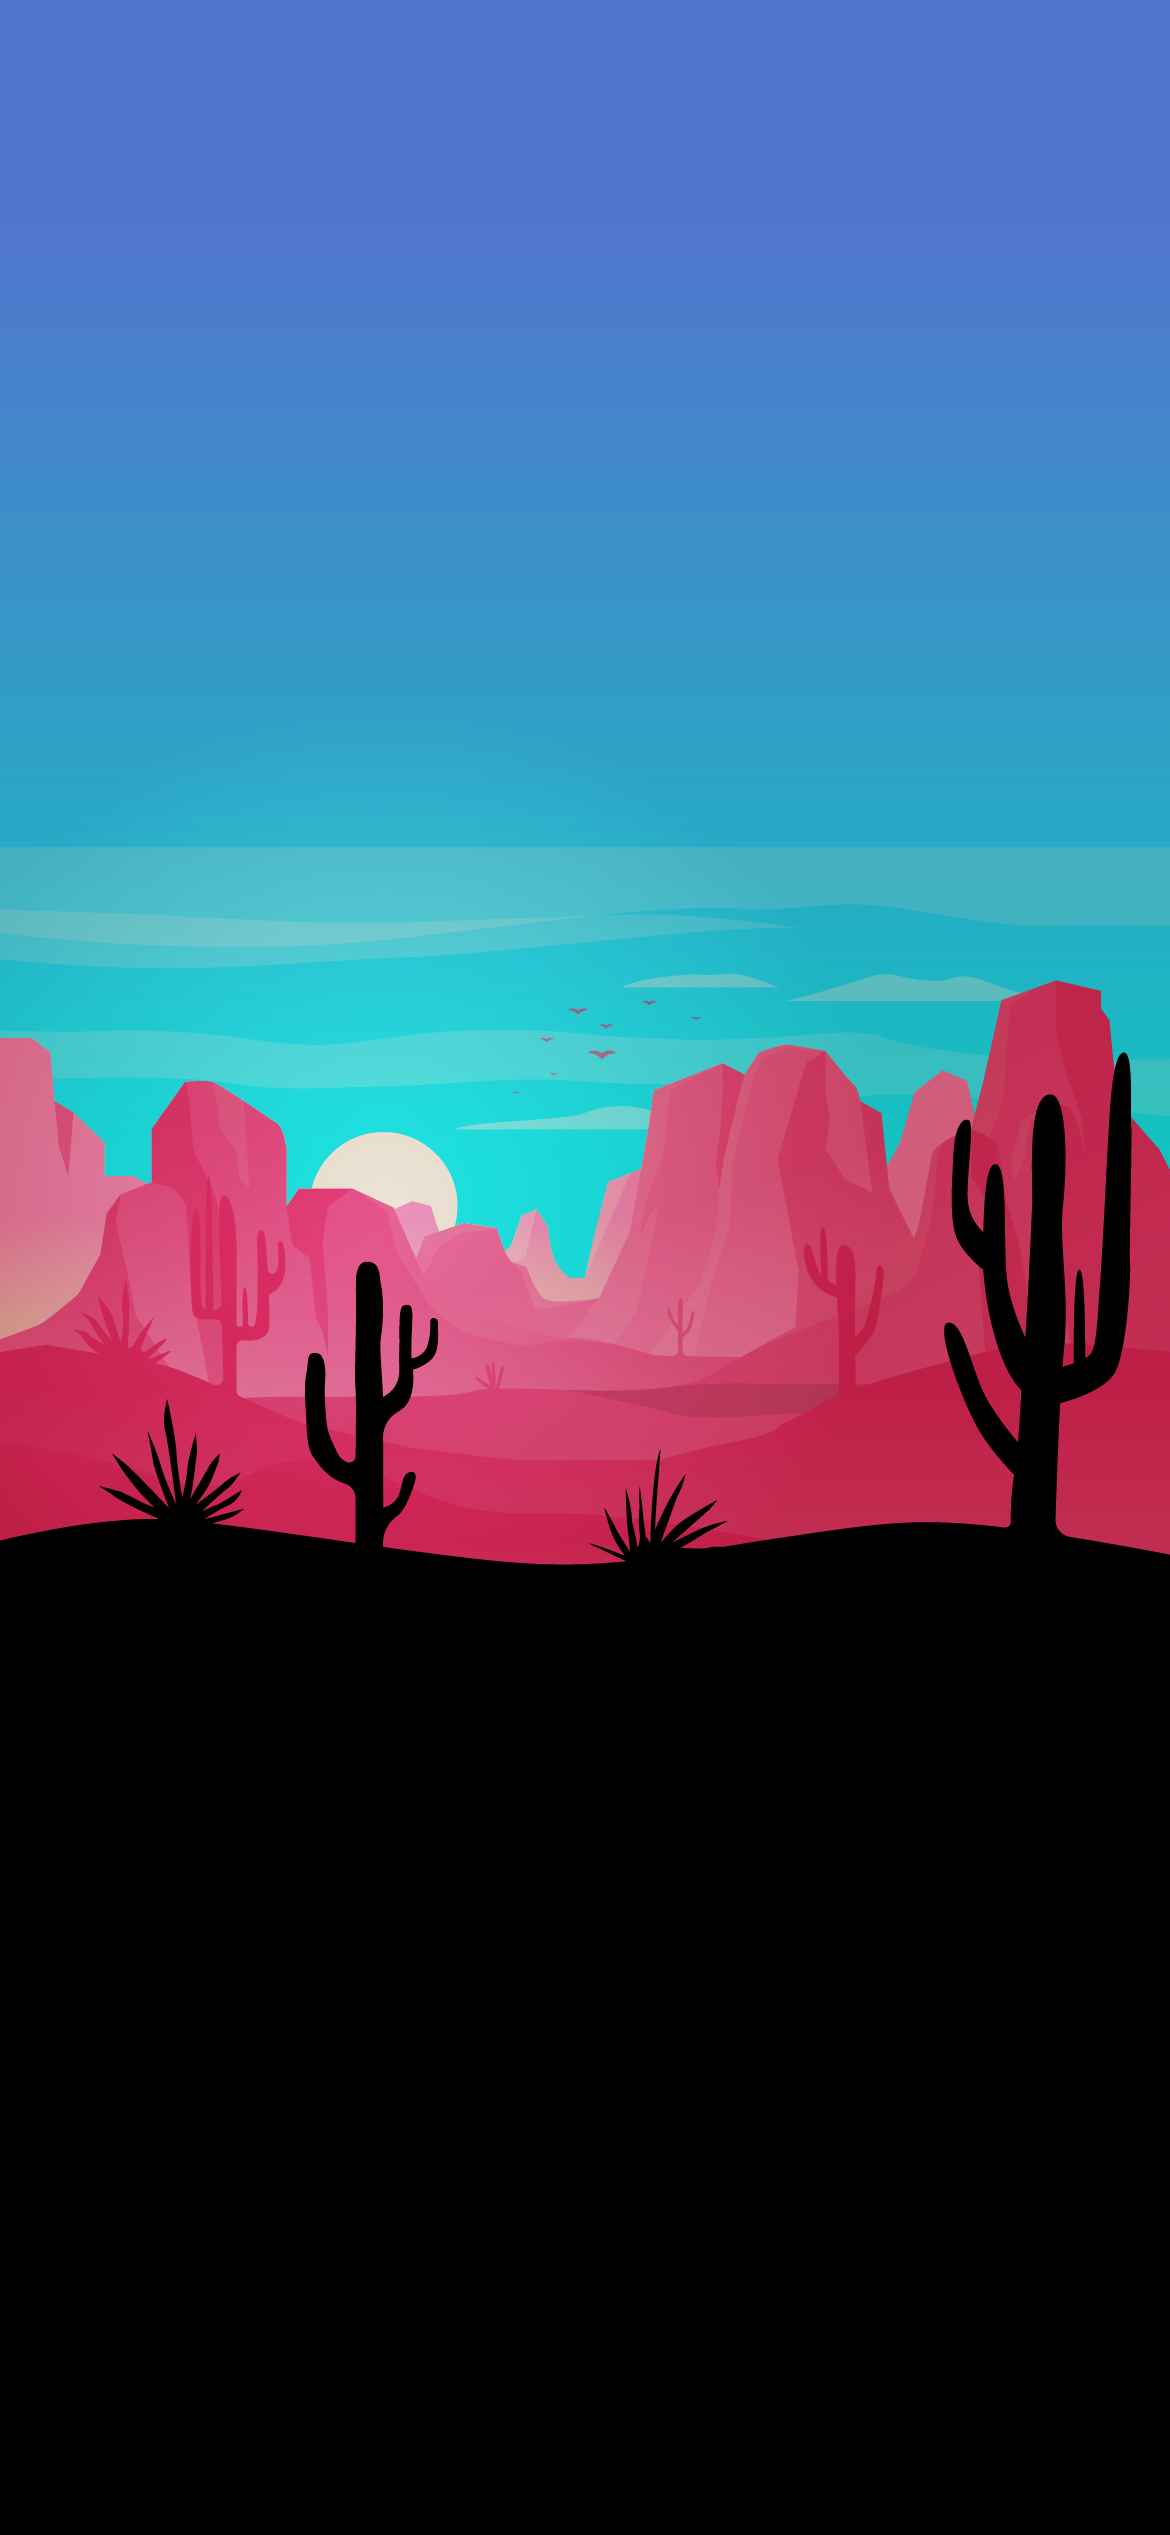 Minimal Artistic Desert Sunset Wallpapers